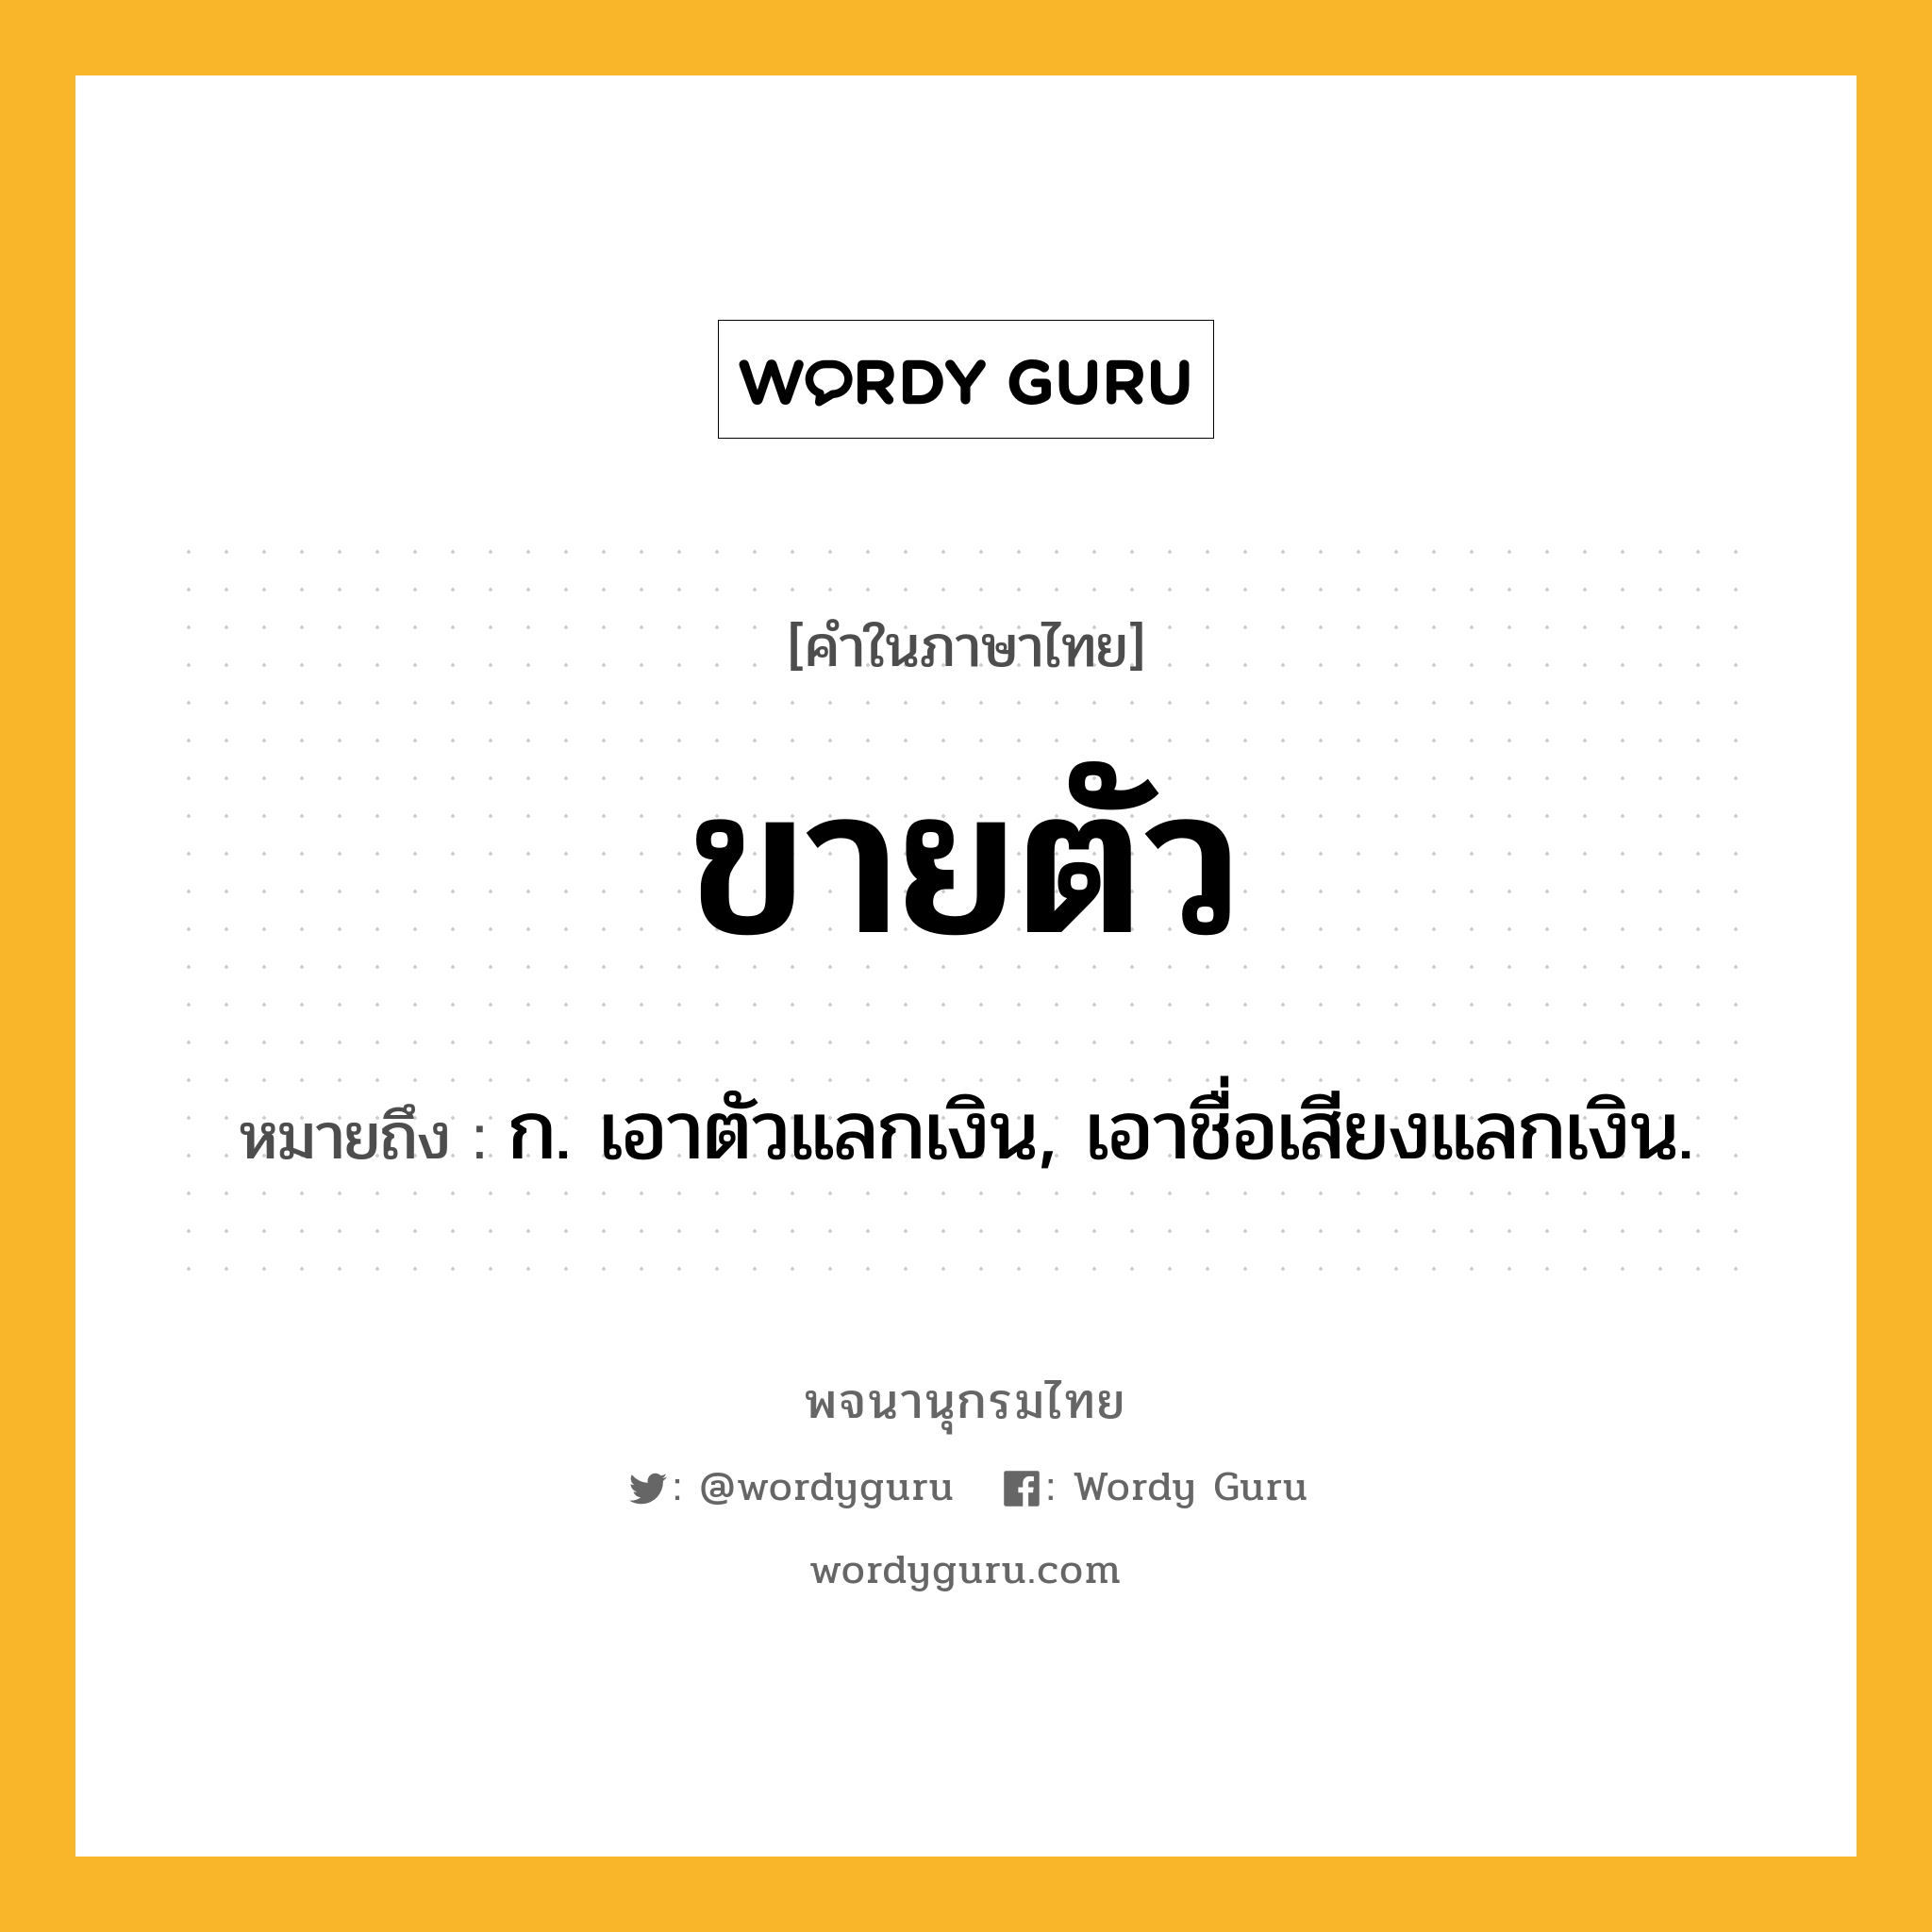 ขายตัว ความหมาย หมายถึงอะไร?, คำในภาษาไทย ขายตัว หมายถึง ก. เอาตัวแลกเงิน, เอาชื่อเสียงแลกเงิน.